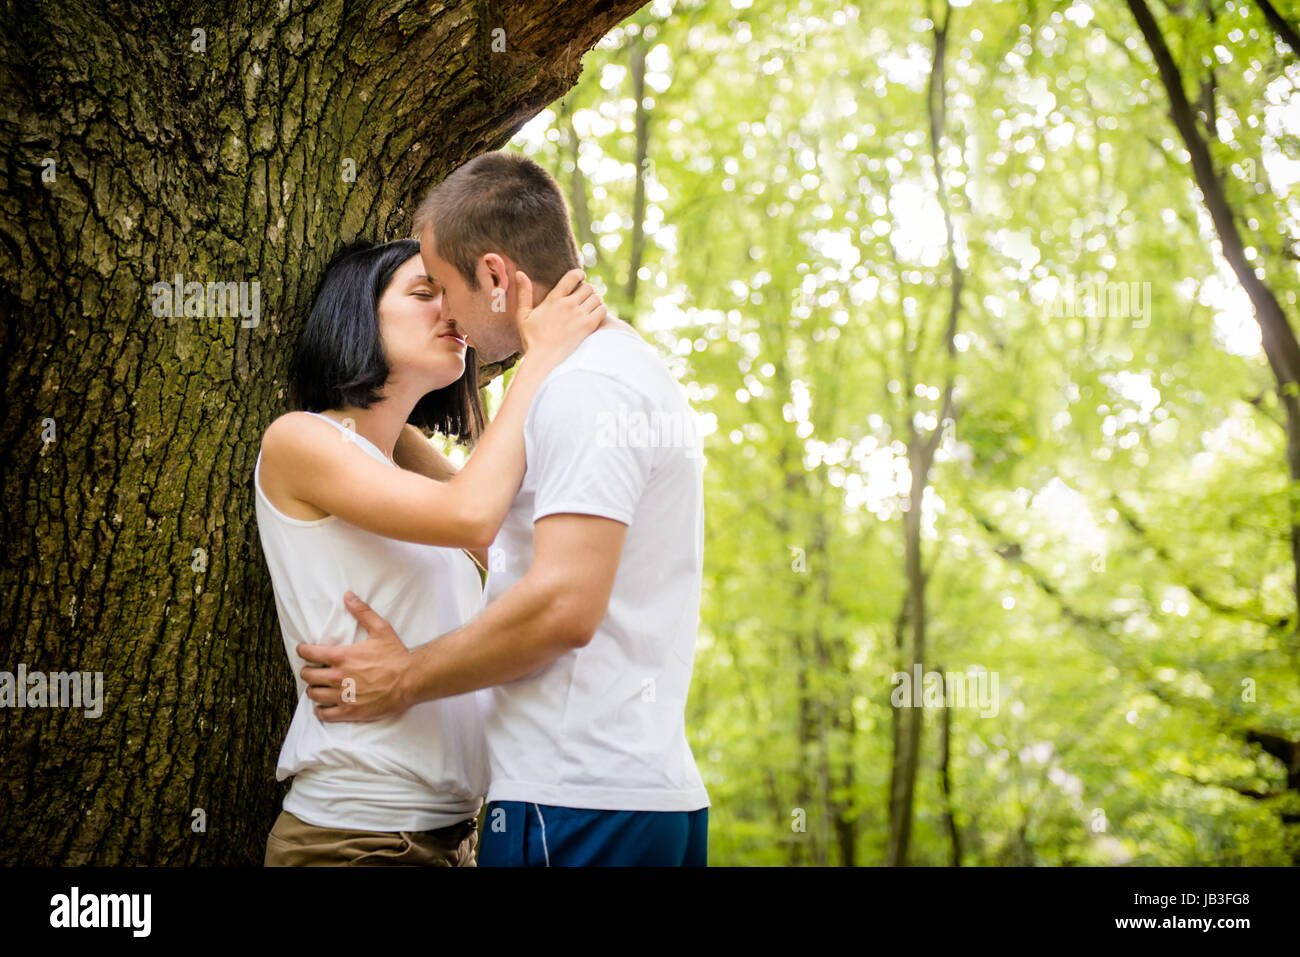 Половые контакты у мужчин. Поцелуй пары в лесу. Влюбленные в лесу. Целуются в лесу. Поцелуй у дерева.